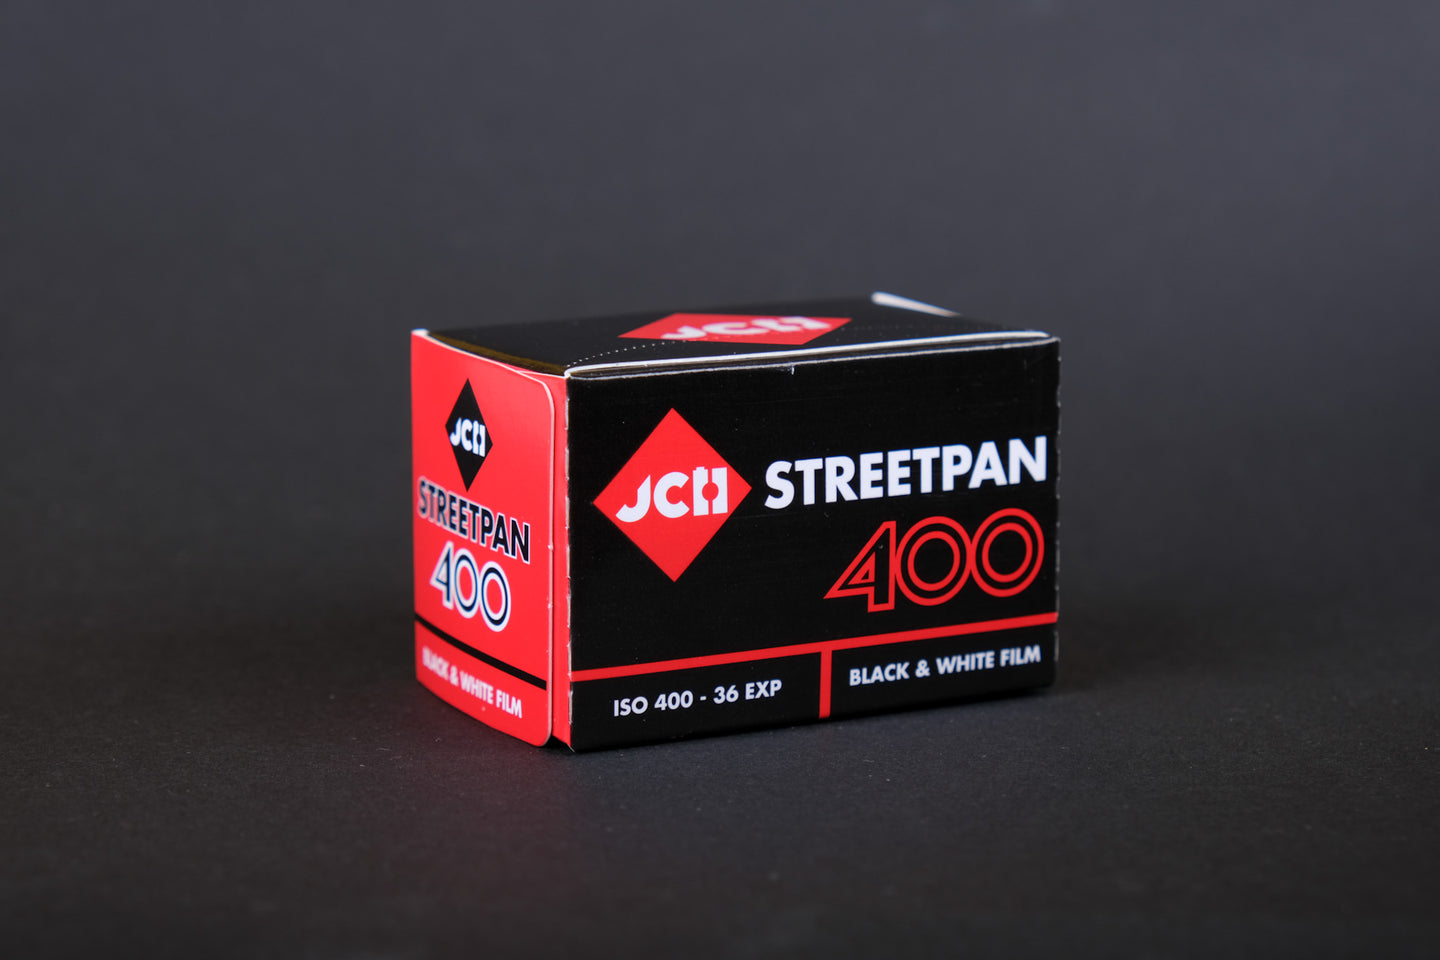 JCH StreetPan 400 35mm Film